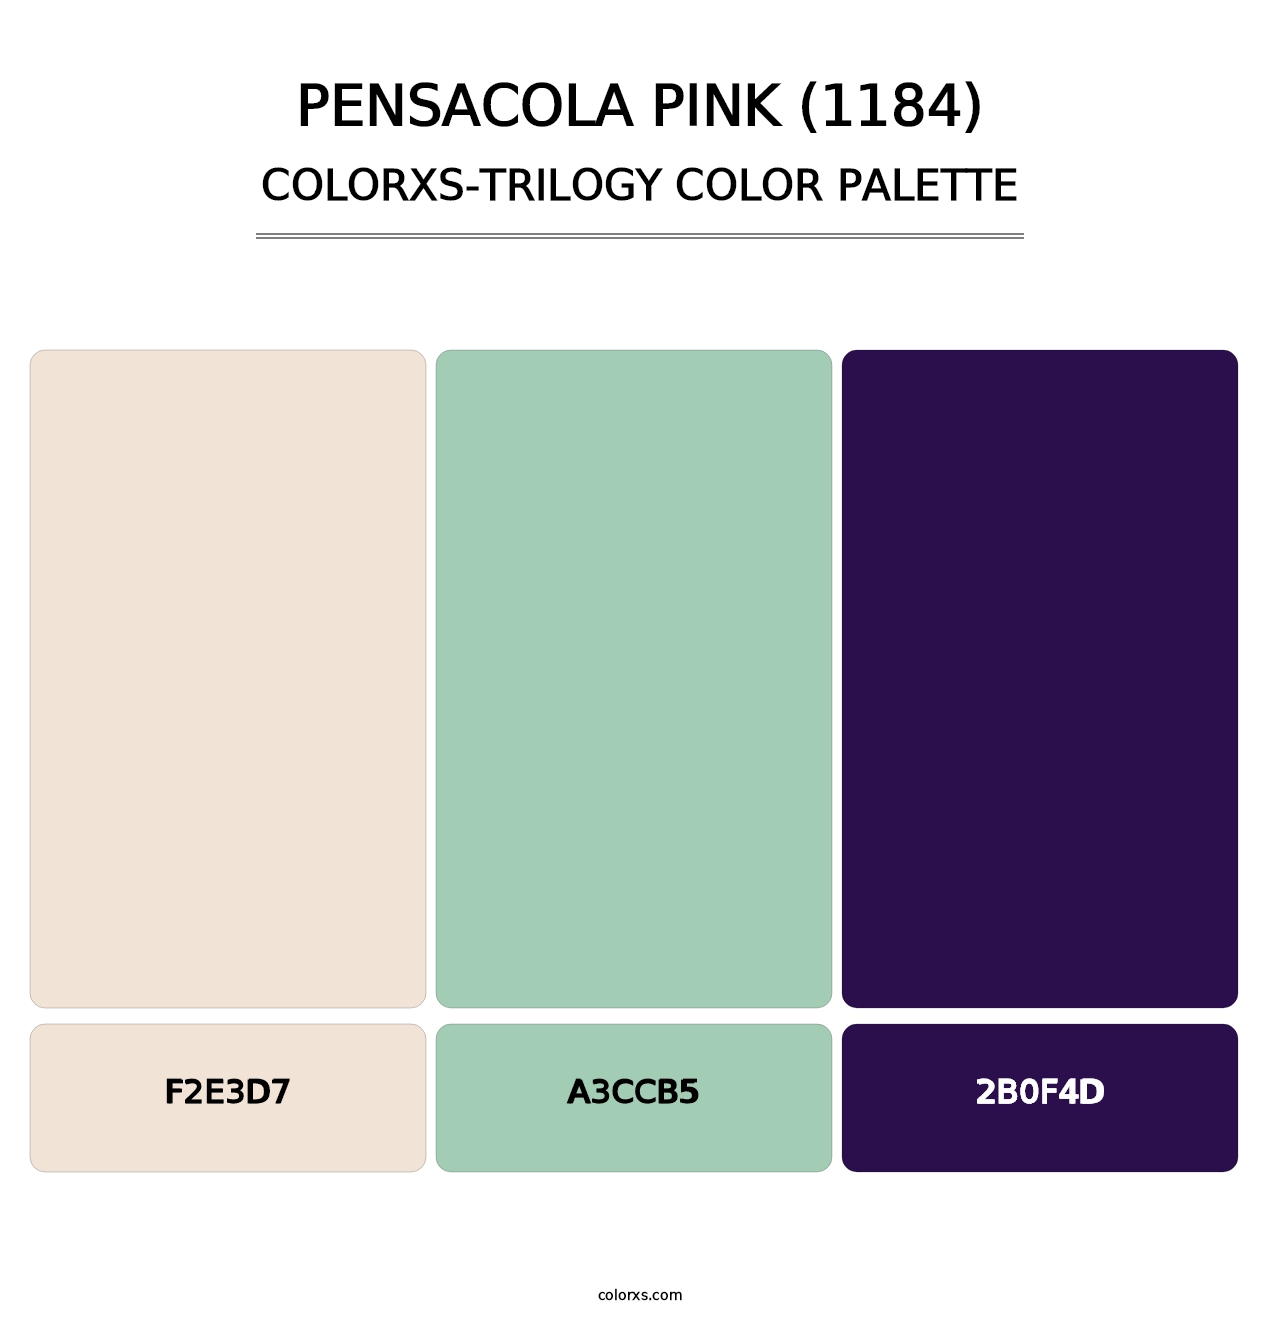 Pensacola Pink (1184) - Colorxs Trilogy Palette